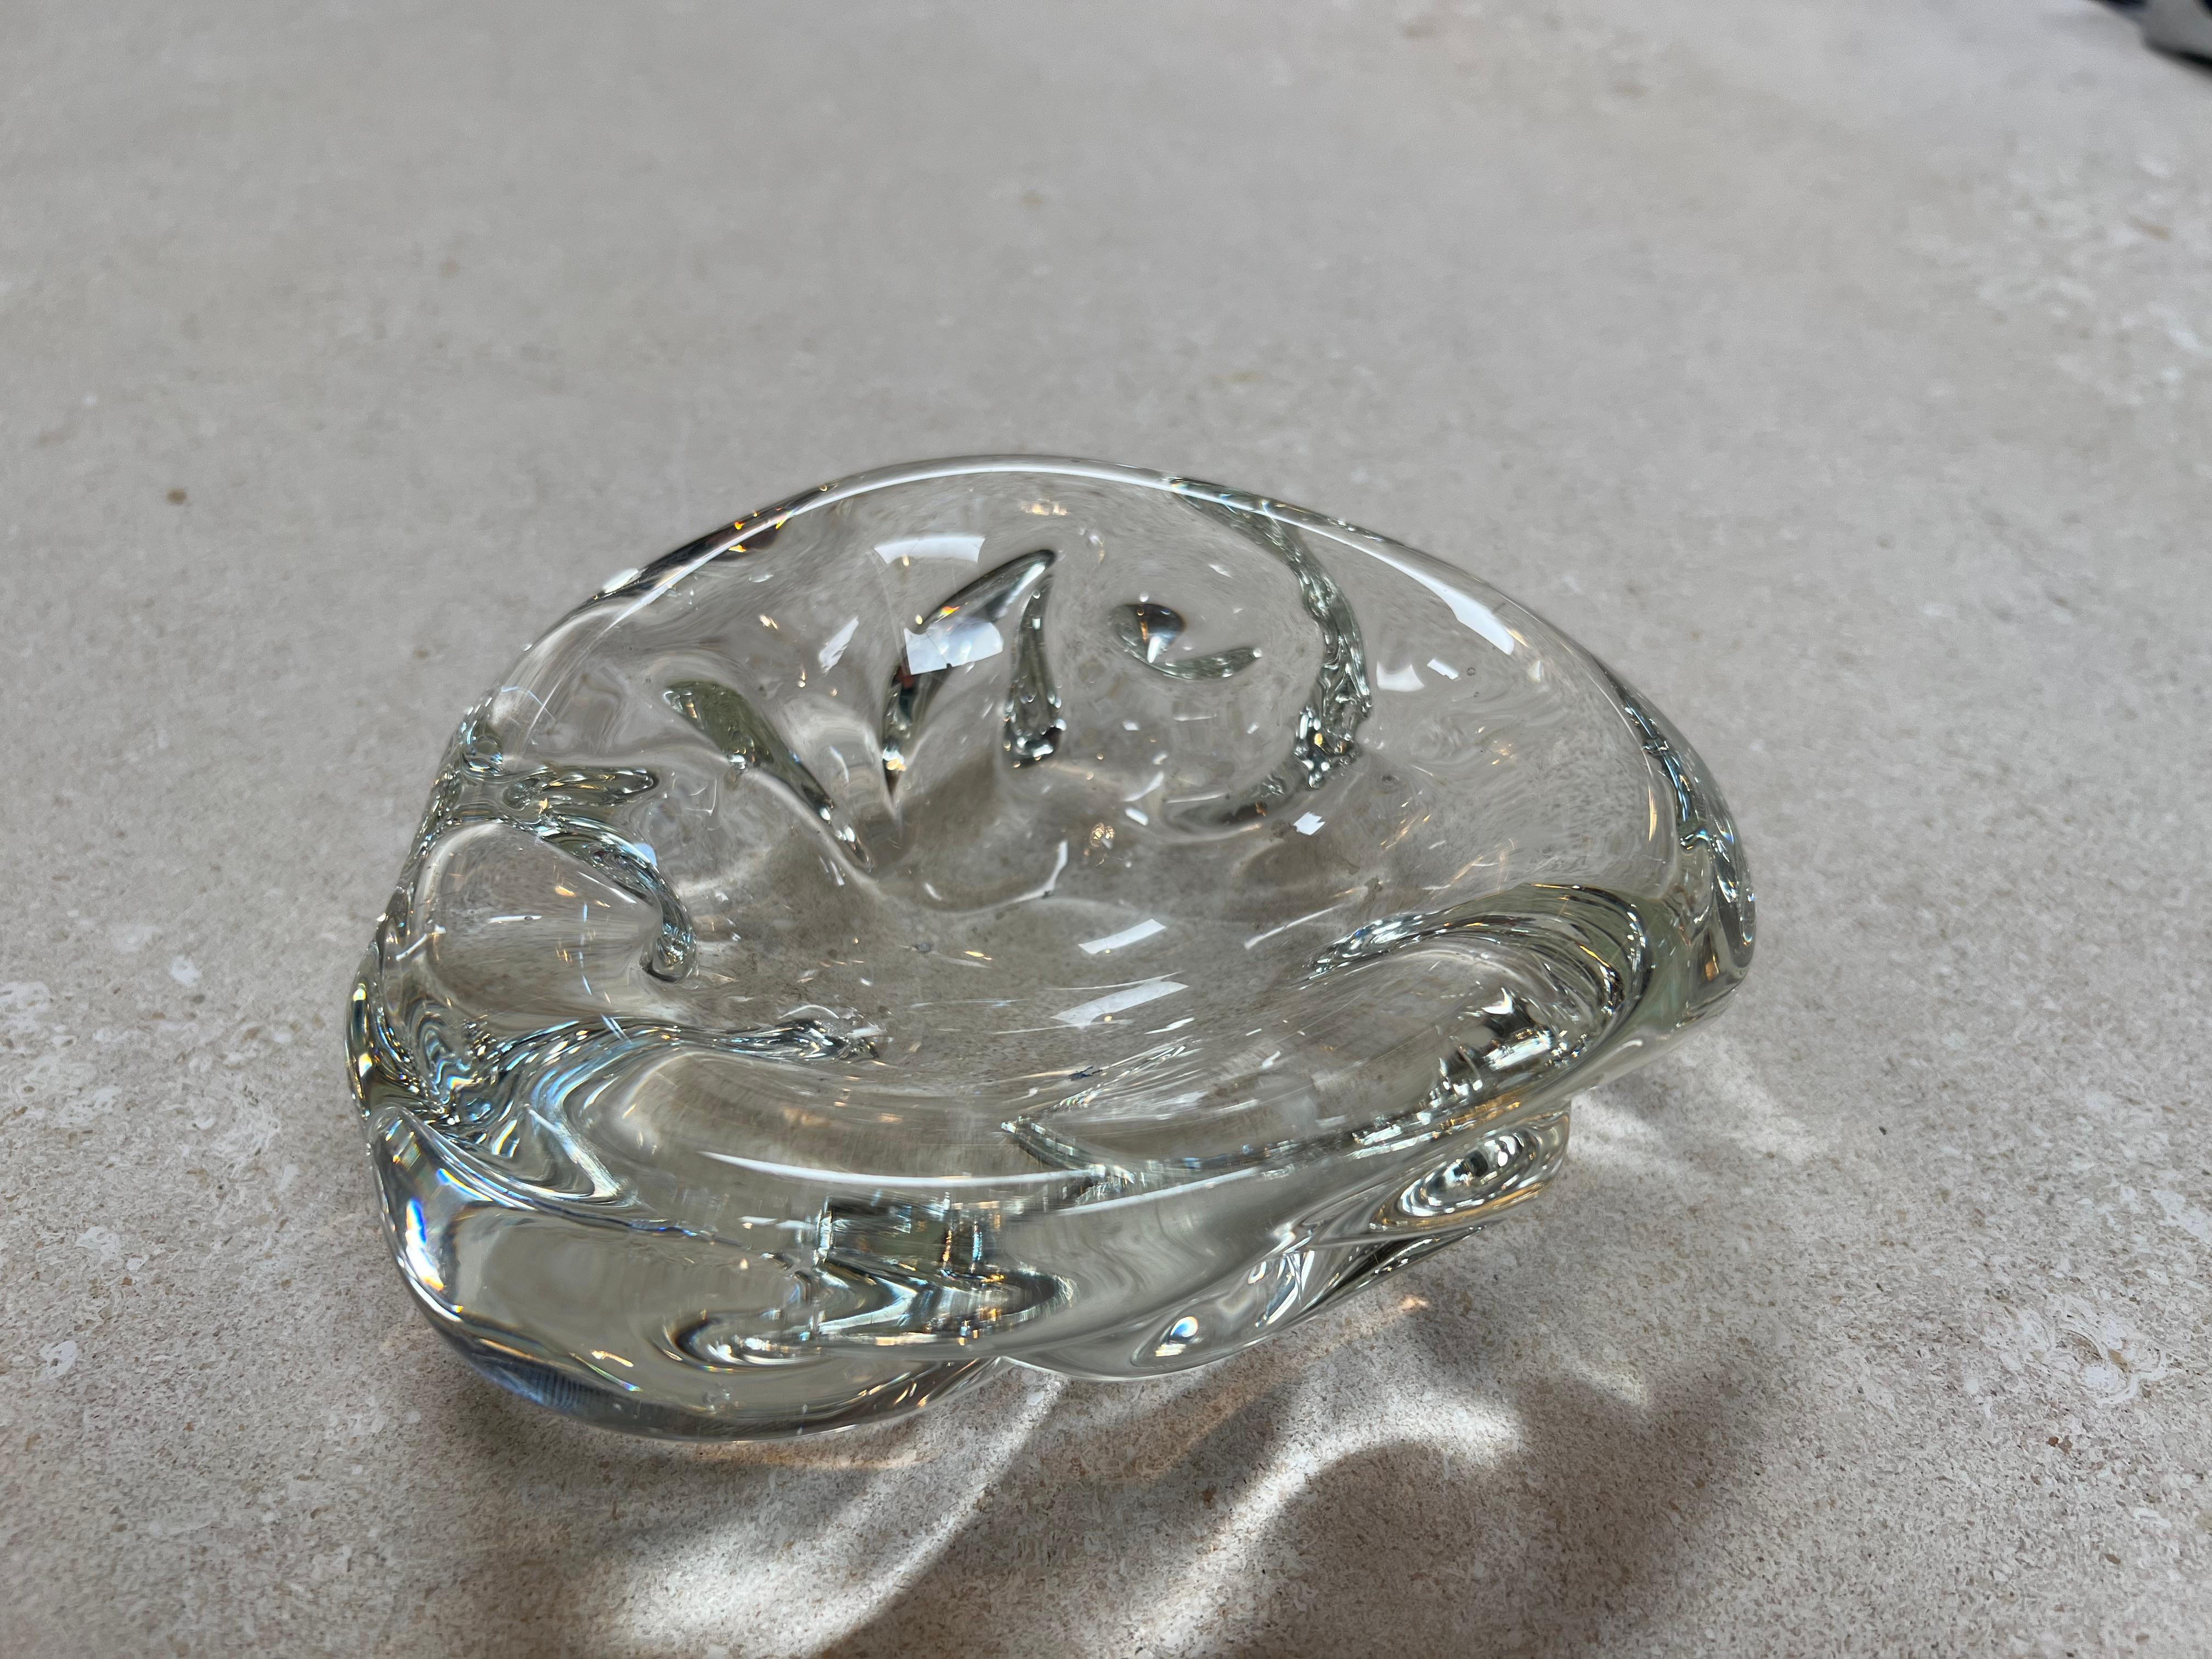 Le petit bol décoratif vintage en verre à coquille des années 1960 dégage une esthétique délicate et charmante. Fabriqué en forme de coquillage, ce bol capture l'essence de la beauté inspirée par l'océan. Le matériau du verre lui confère un